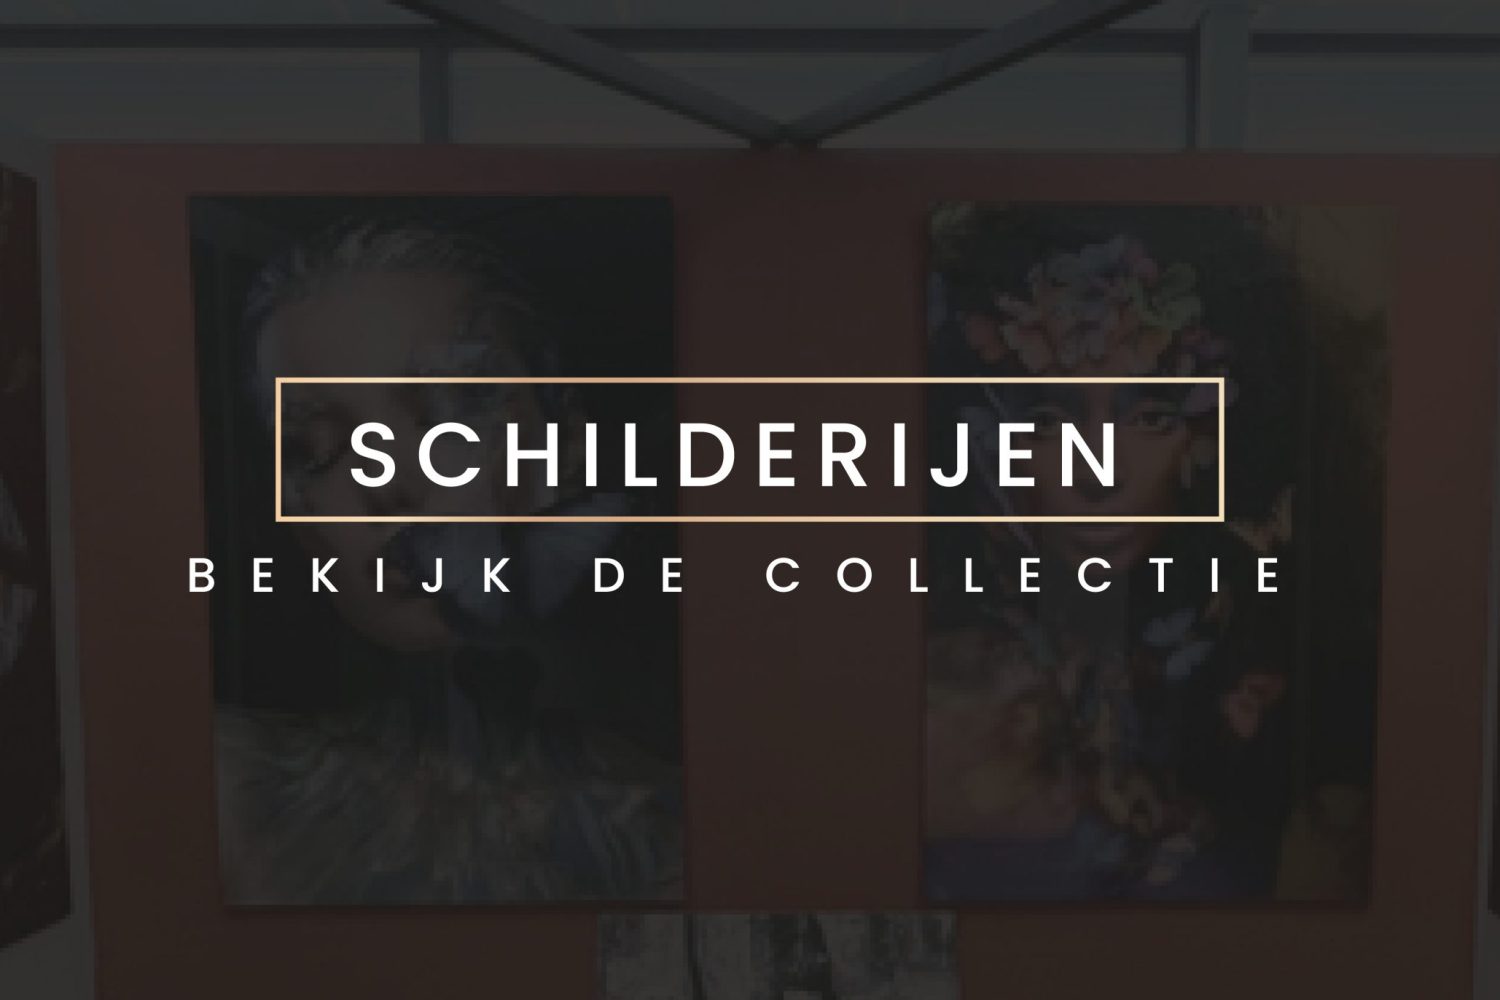 Schilderijen by Dutch Wall Art